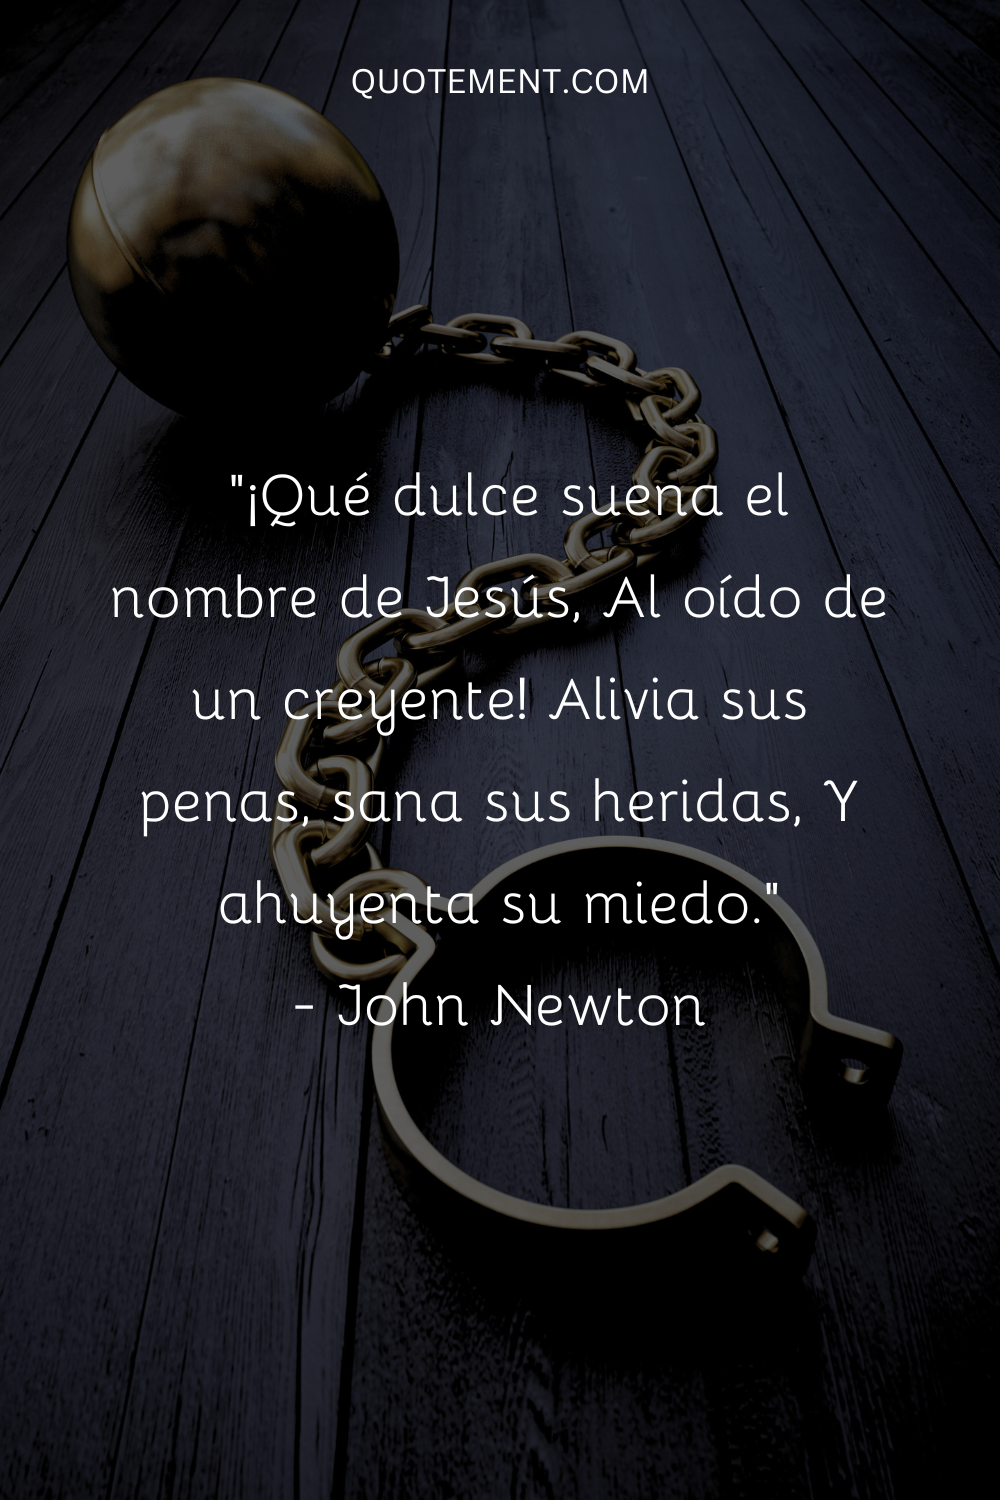 "¡Qué dulce suena el nombre de Jesús, al oído de un creyente! Alivia sus penas, cura sus heridas, Y ahuyenta su miedo". - John Newton